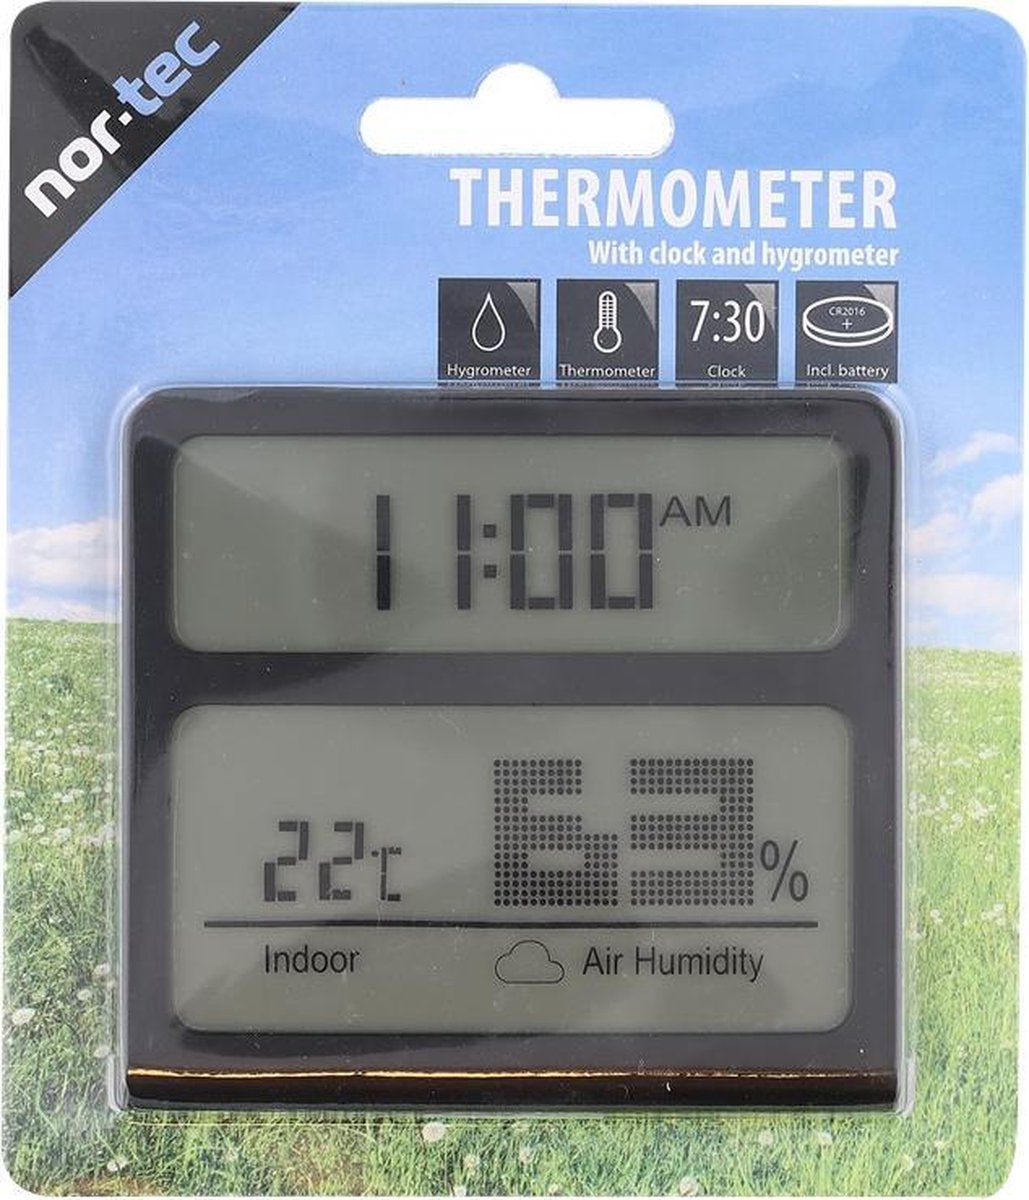 Kanon dam Afkorten Nortec - binnen thermometer - zwart - thermometer - met klok - thermostaat  - draadloos... | bol.com